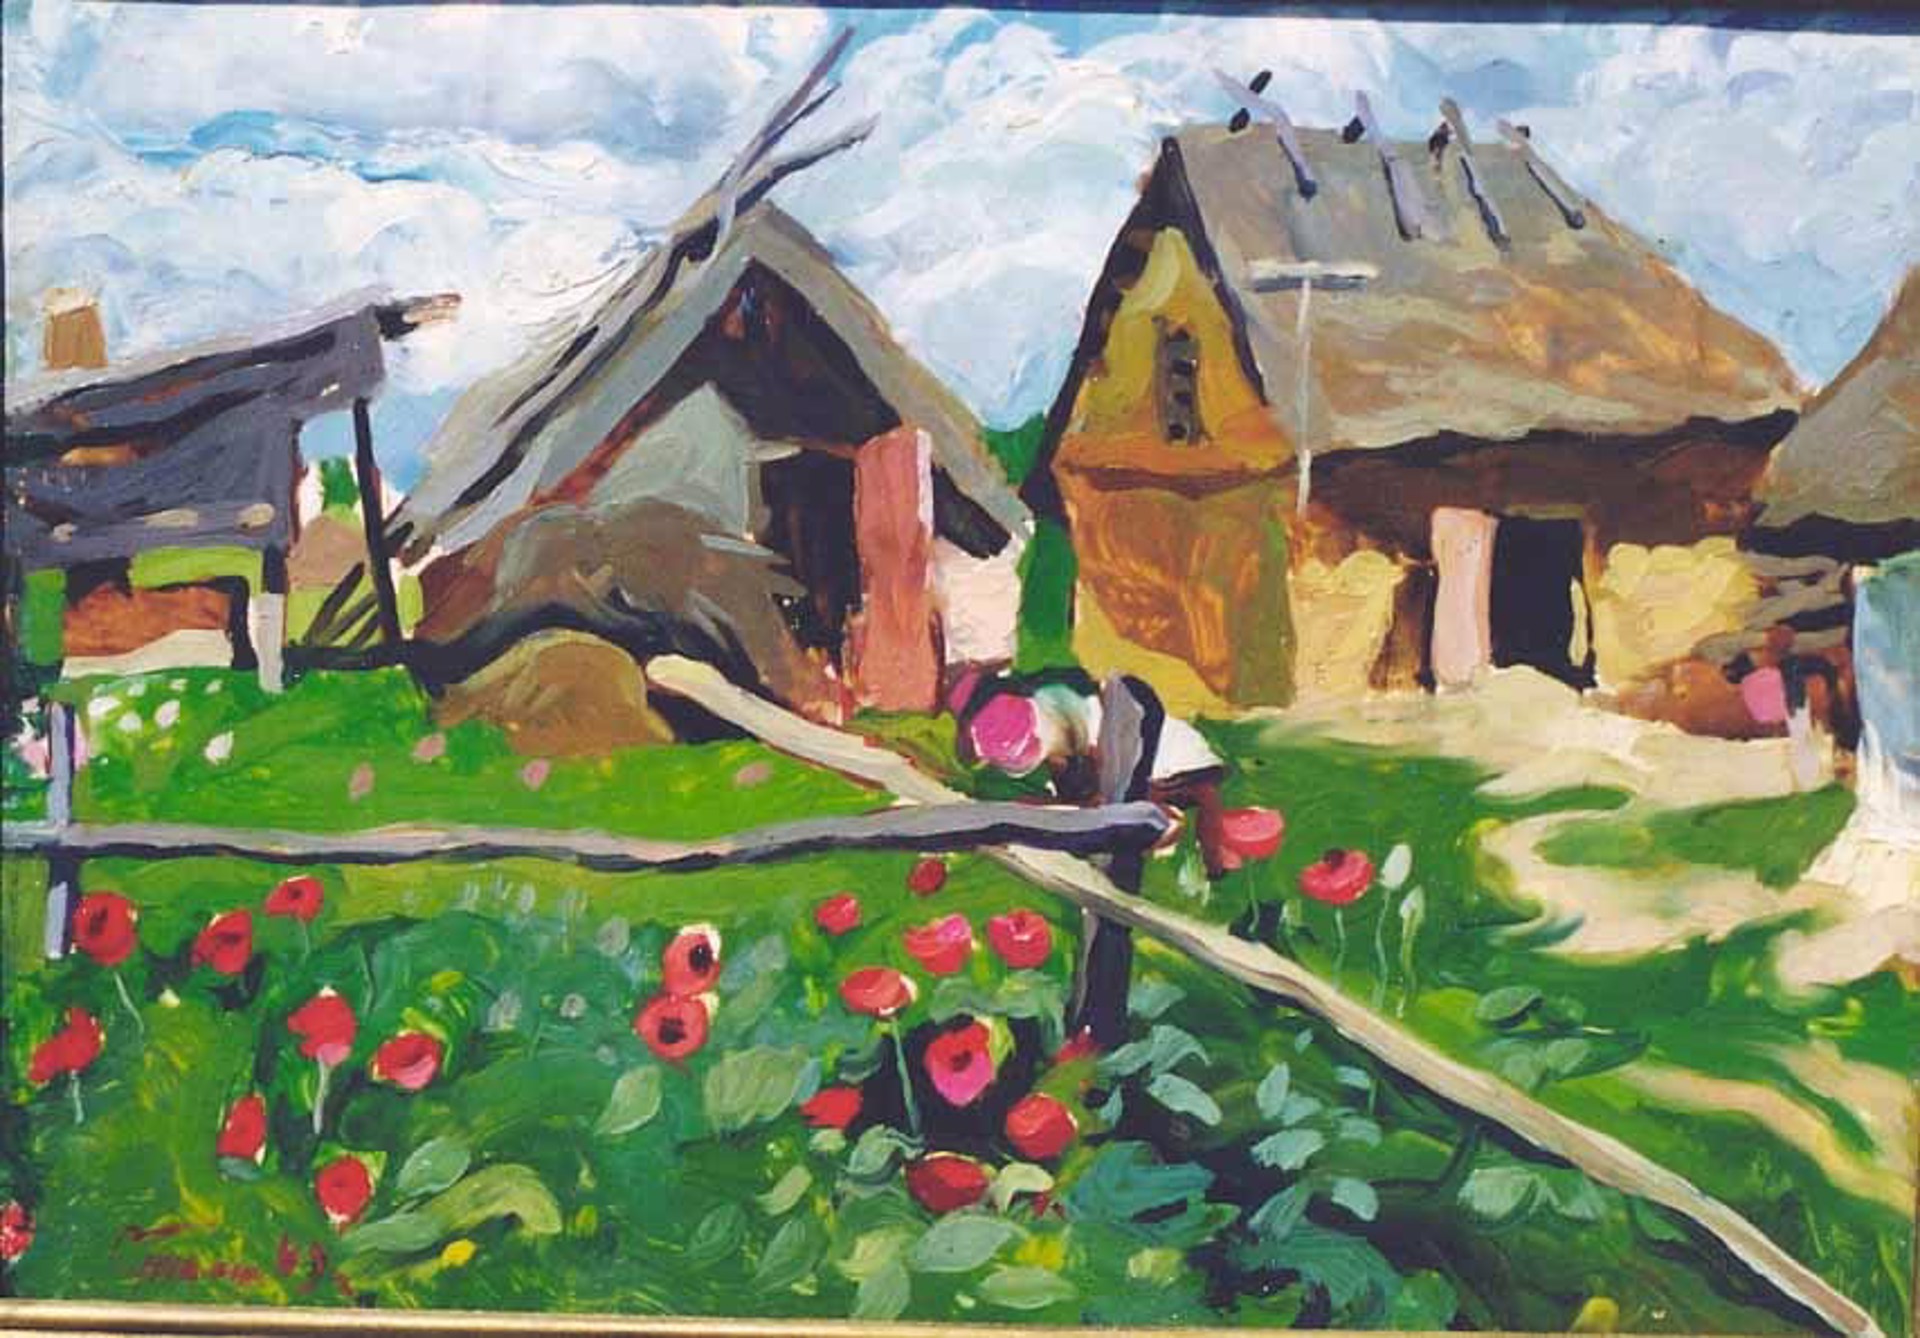 In the Village by Sergei Grosh